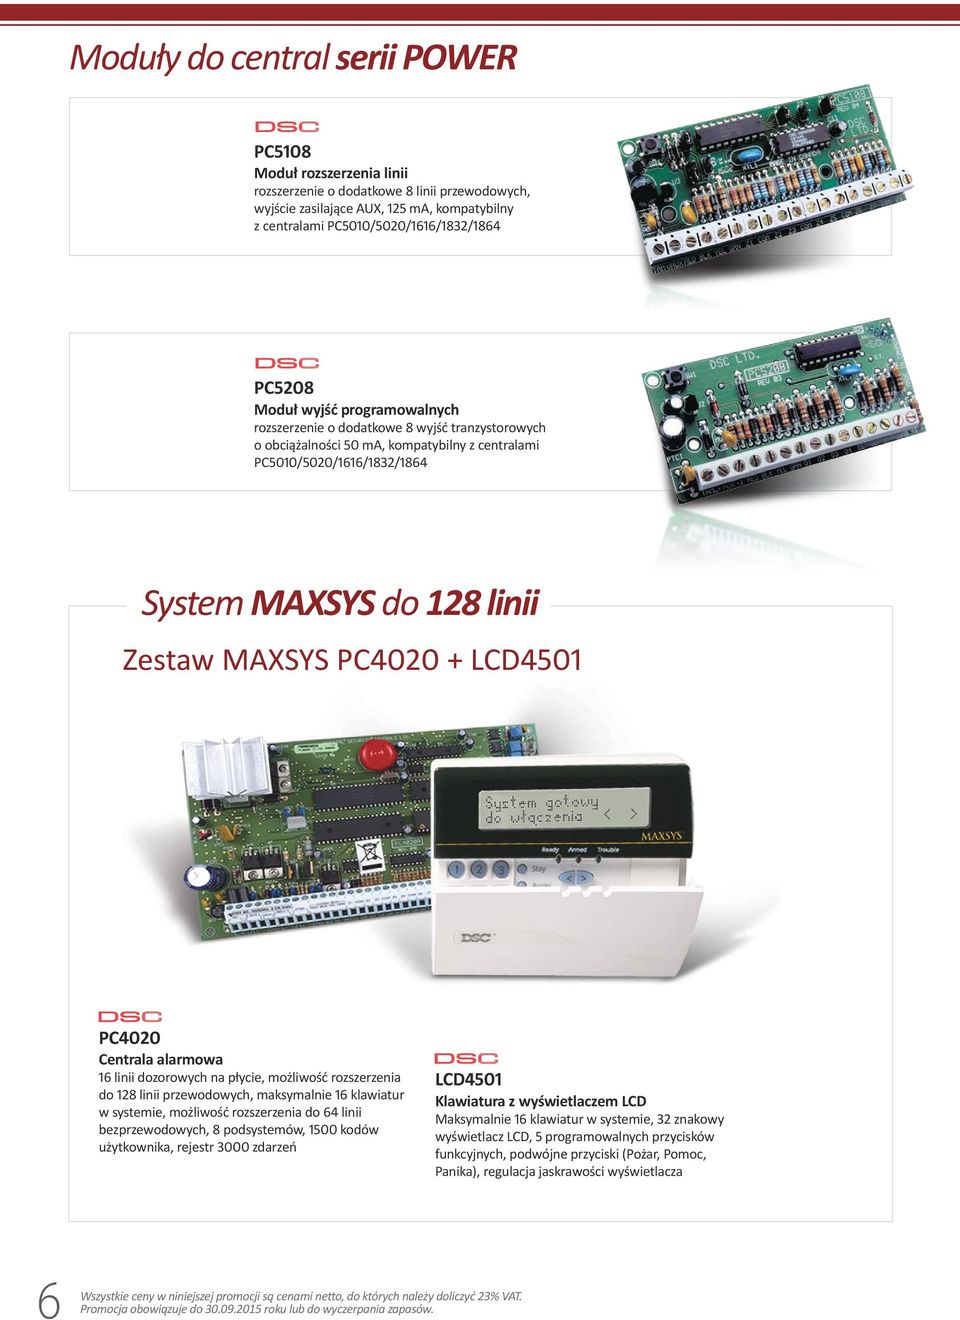 MAXSYS PC4020 + LCD4501 PC4020 Centrala alarmowa 16 linii dozorowych na płycie, możliwość rozszerzenia do 128 linii przewodowych, maksymalnie 16 klawiatur w systemie, możliwość rozszerzenia do 64